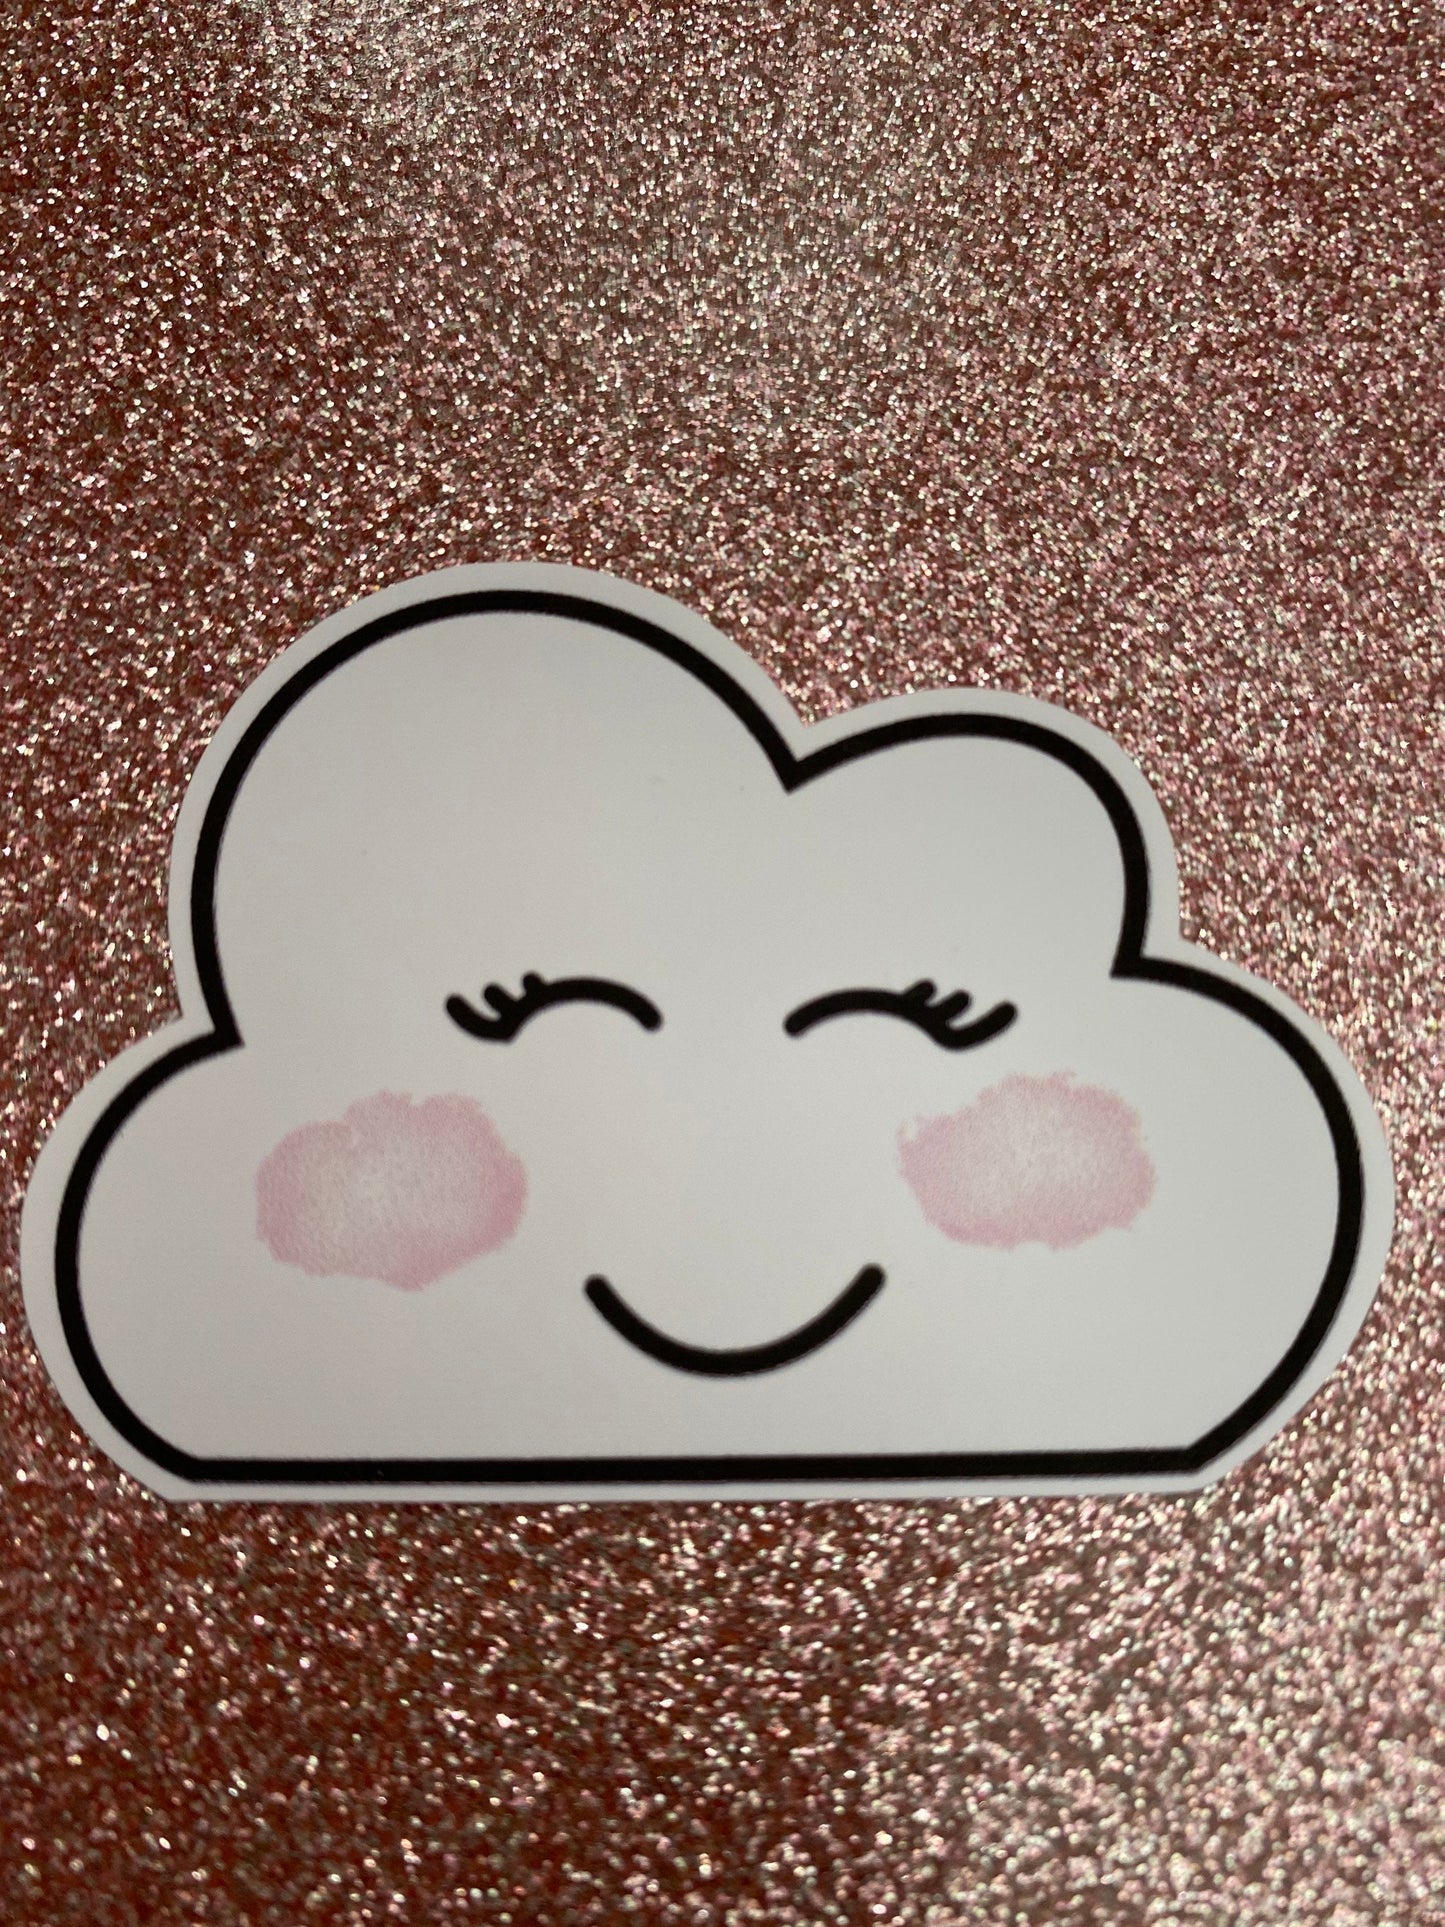 Smiley cloud sticker, planner sticker